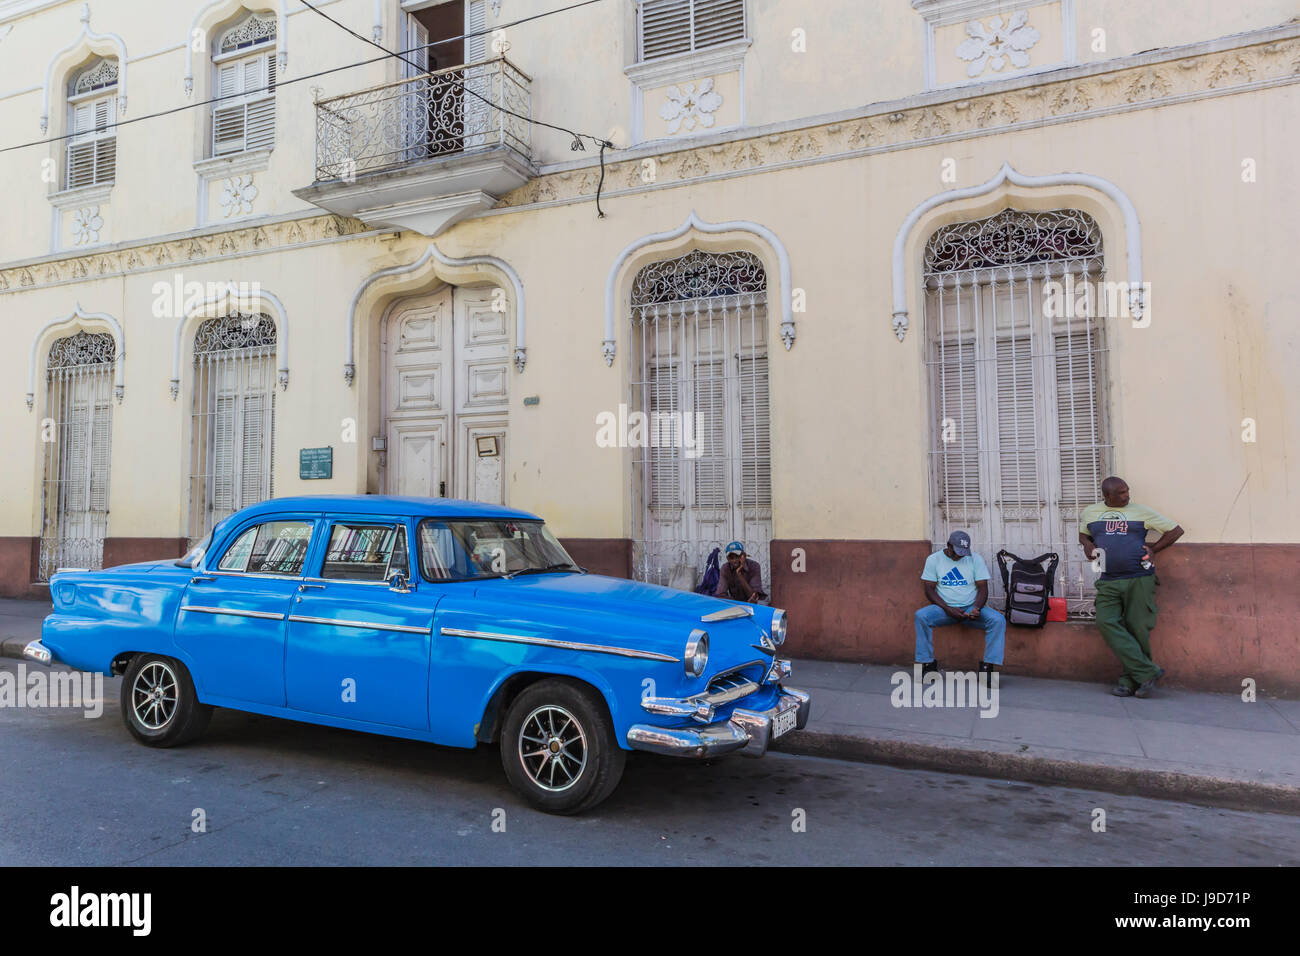 Classic 1950 Dodge taxi, connu localement comme almendrones dans la ville de Cienfuegos, Cuba, Antilles, Caraïbes, Amérique Centrale Banque D'Images